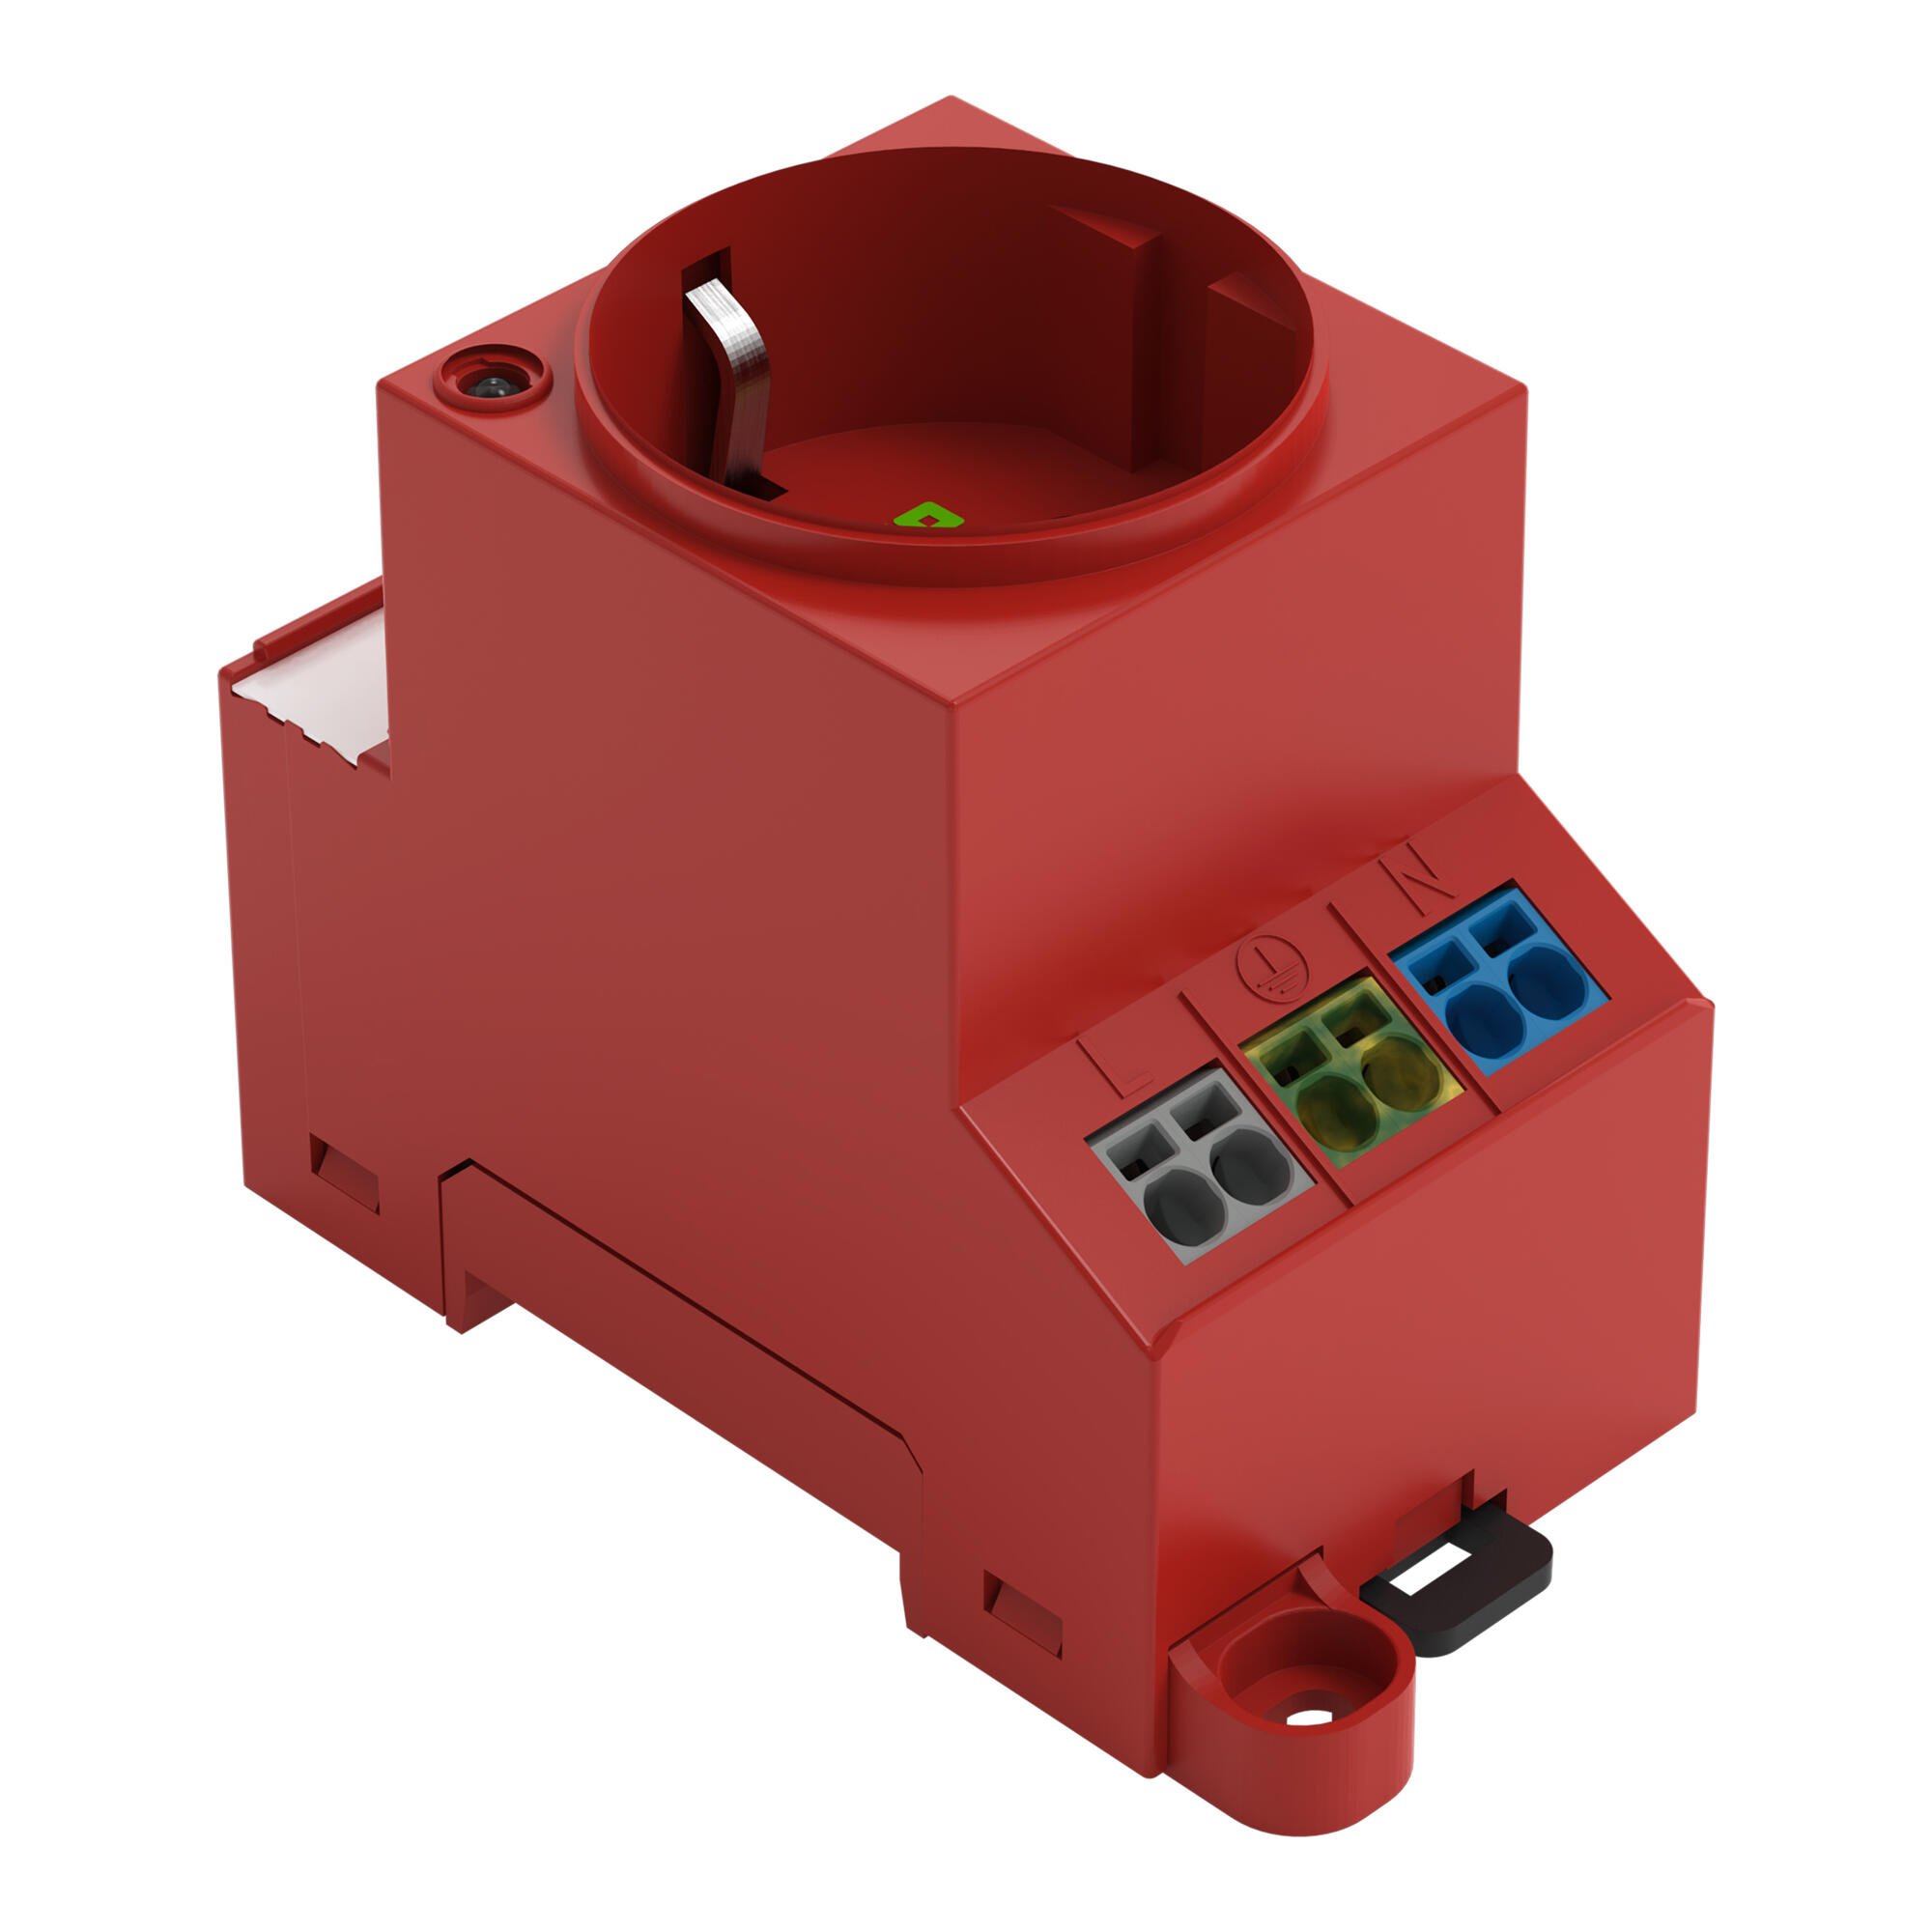 開關盒插座; 適用於導軌和螺絲安裝; 適用於 F 類型插頭，CEE 7/4 (Schuko); 德國、荷蘭、奧地利通用; 帶 LED 指示燈; 帶 Push-in Cage Clamp 雙連接; 紅色